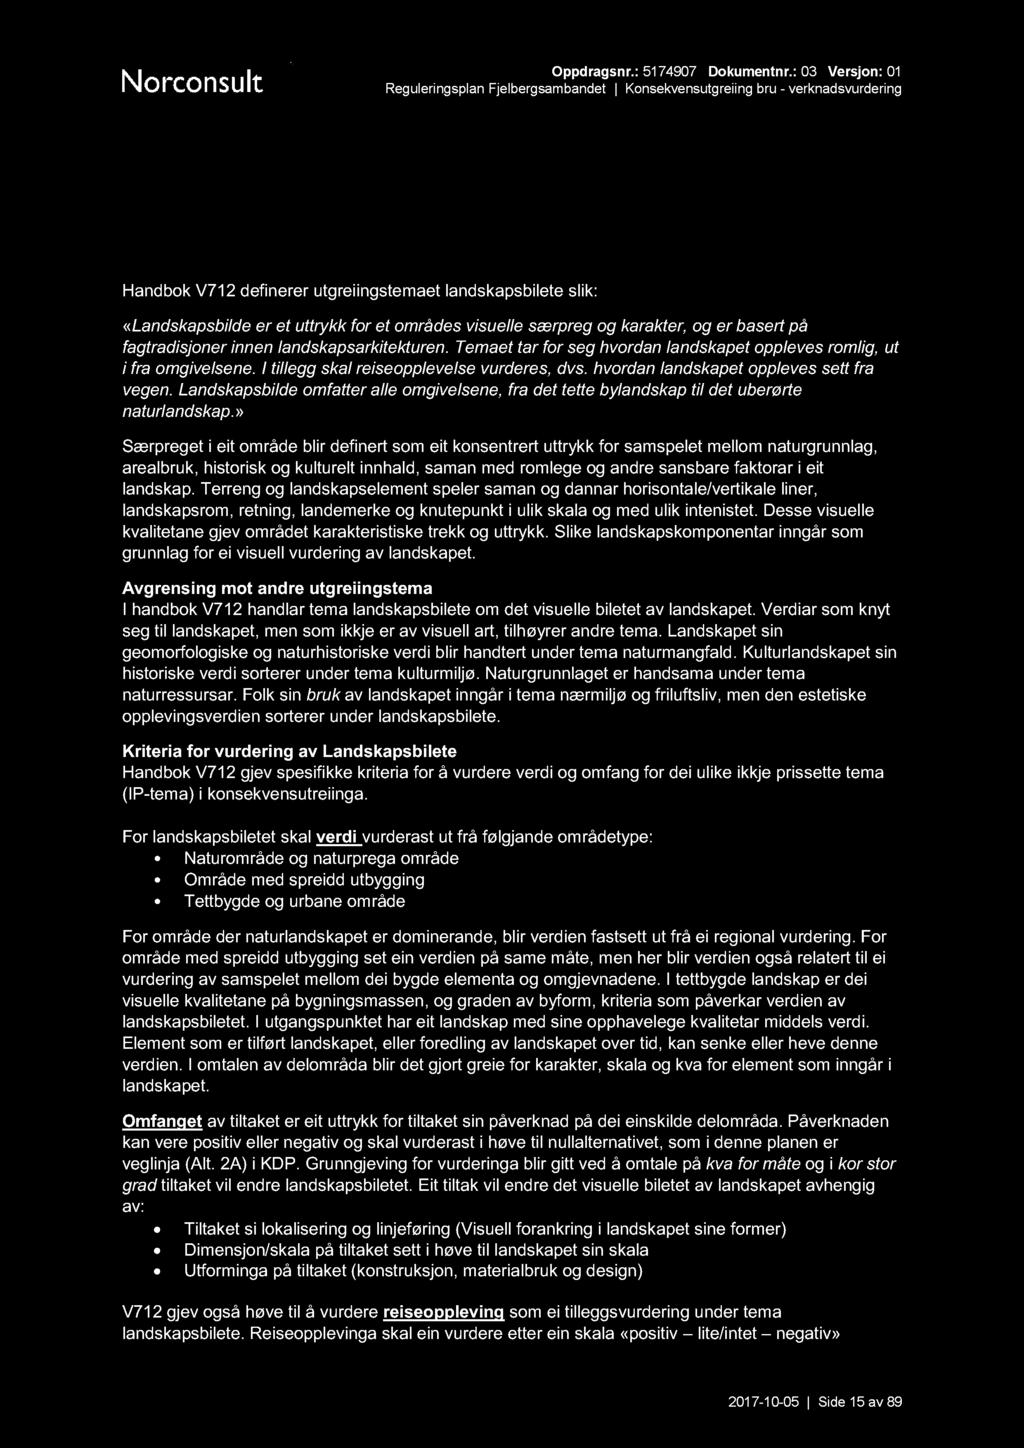 Reguleringsplan Fjelbergsambandet - PDF Free Download